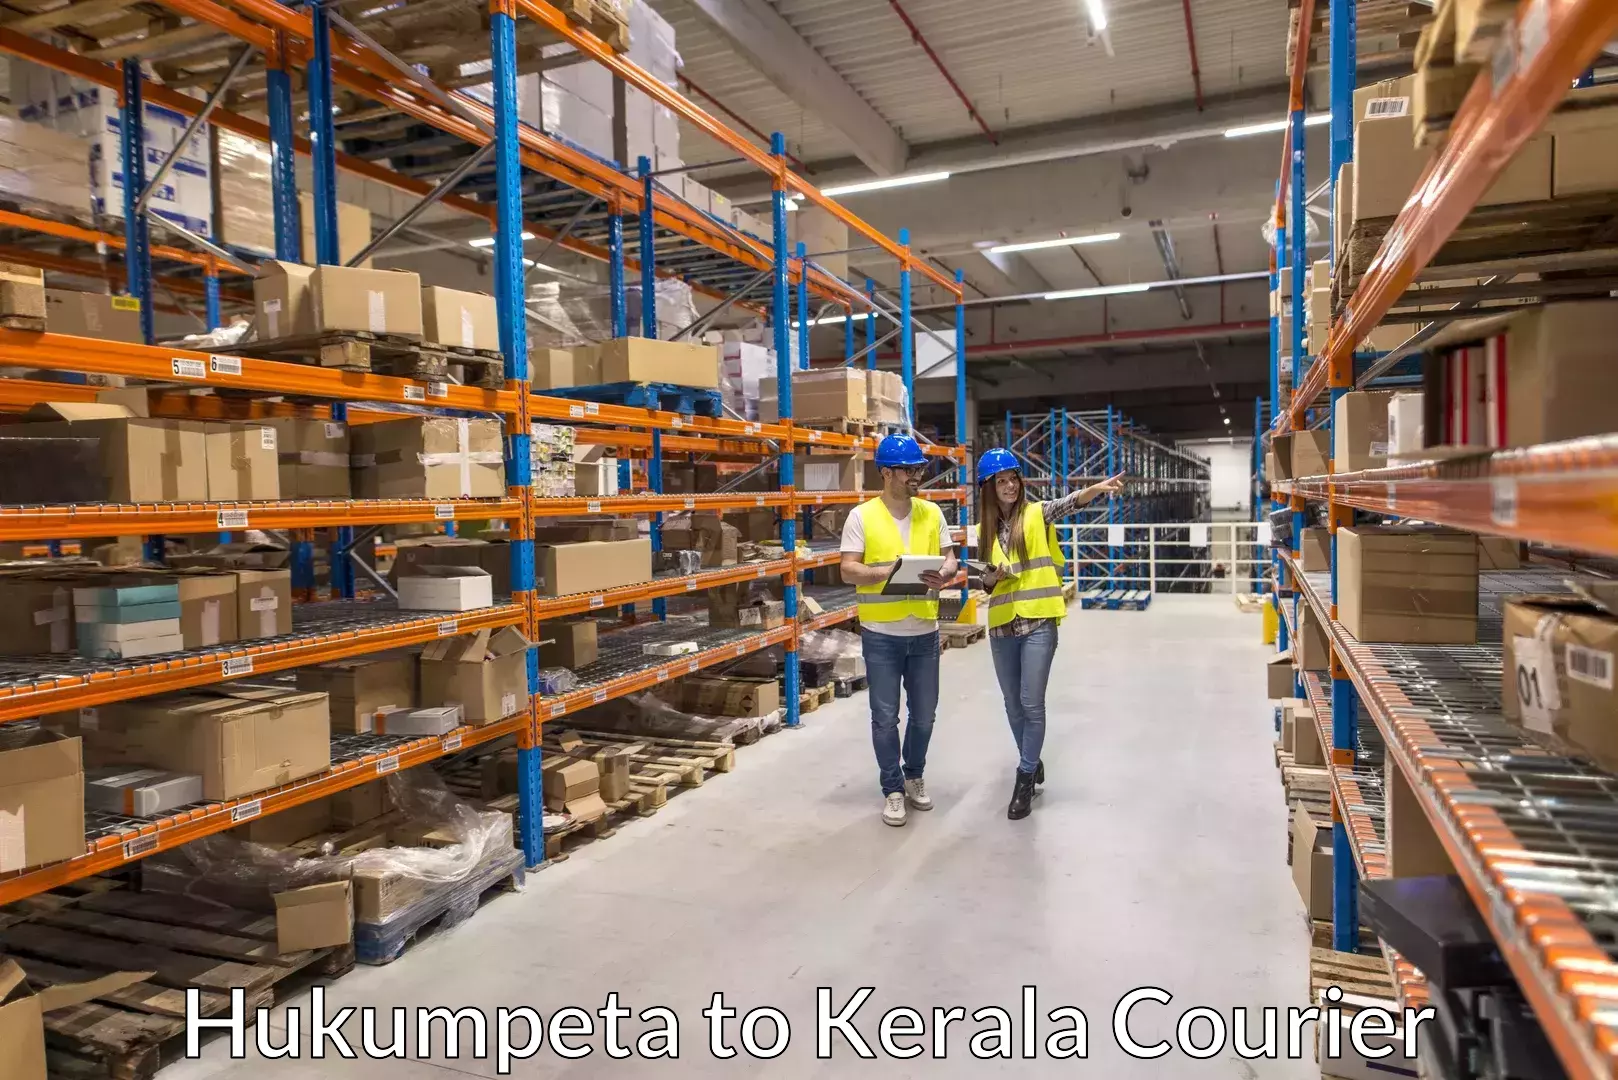 Moving and handling services Hukumpeta to Kothanalloor